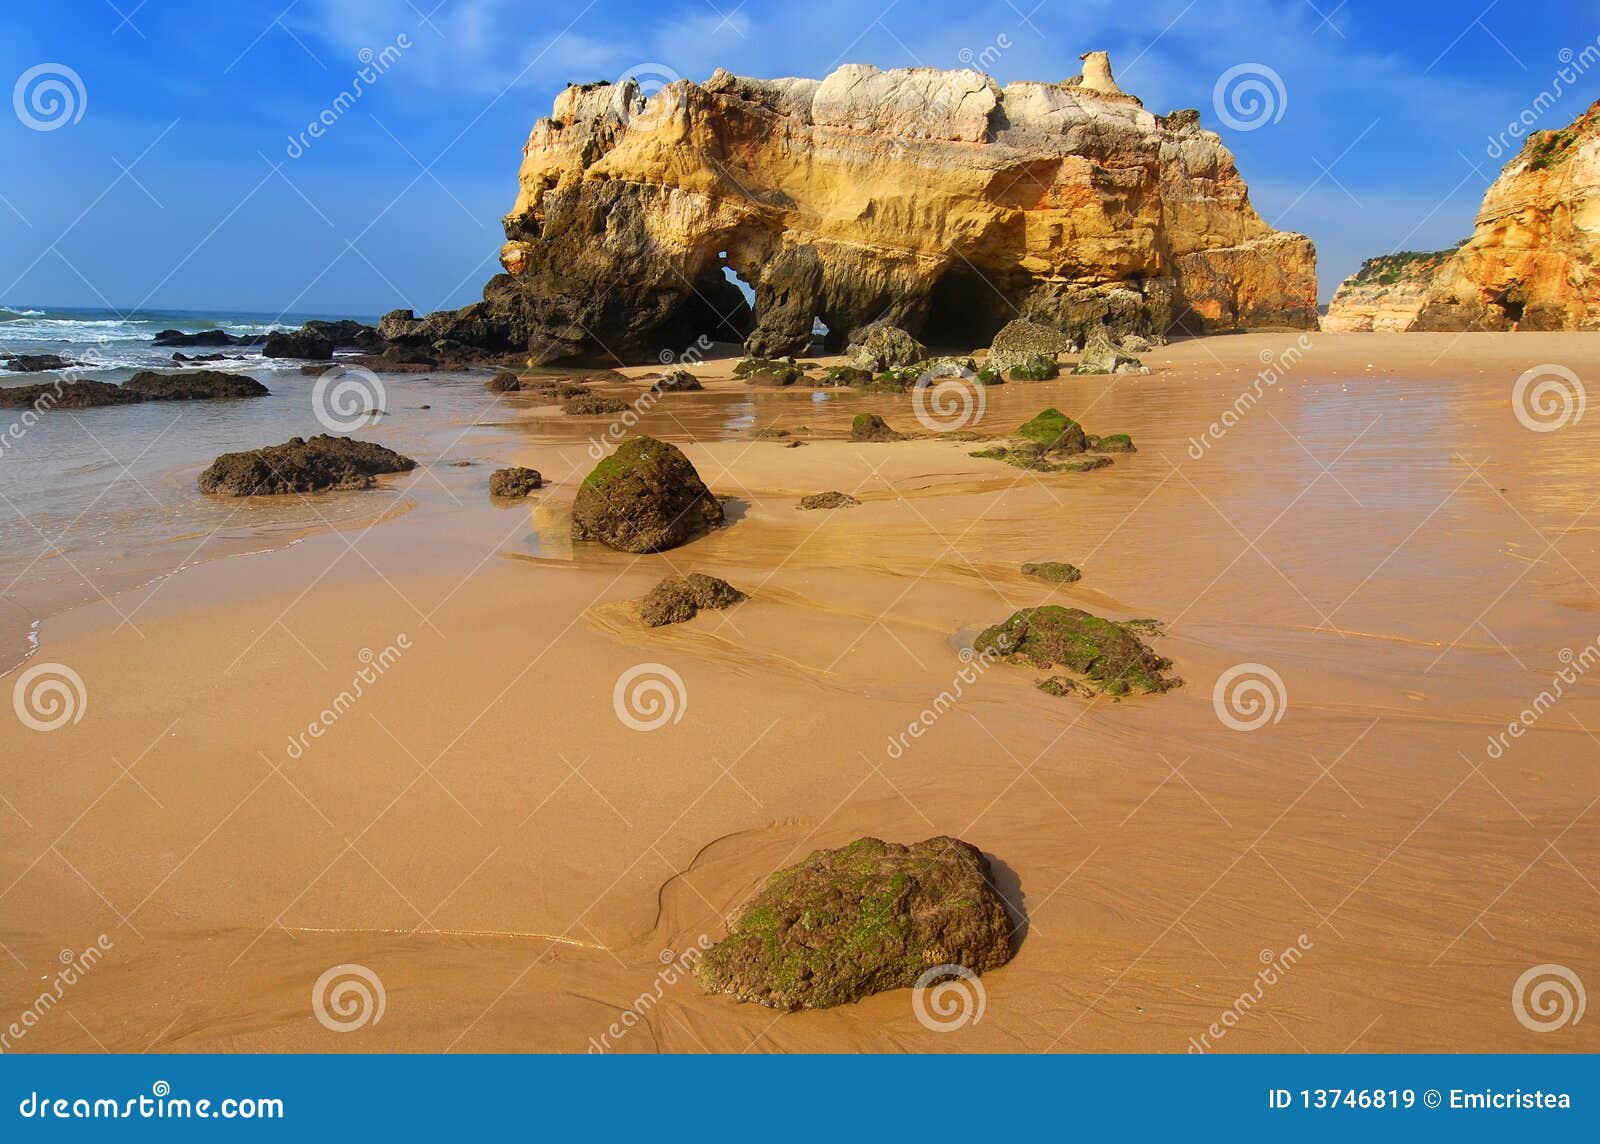 praia da rocha beach, portugal